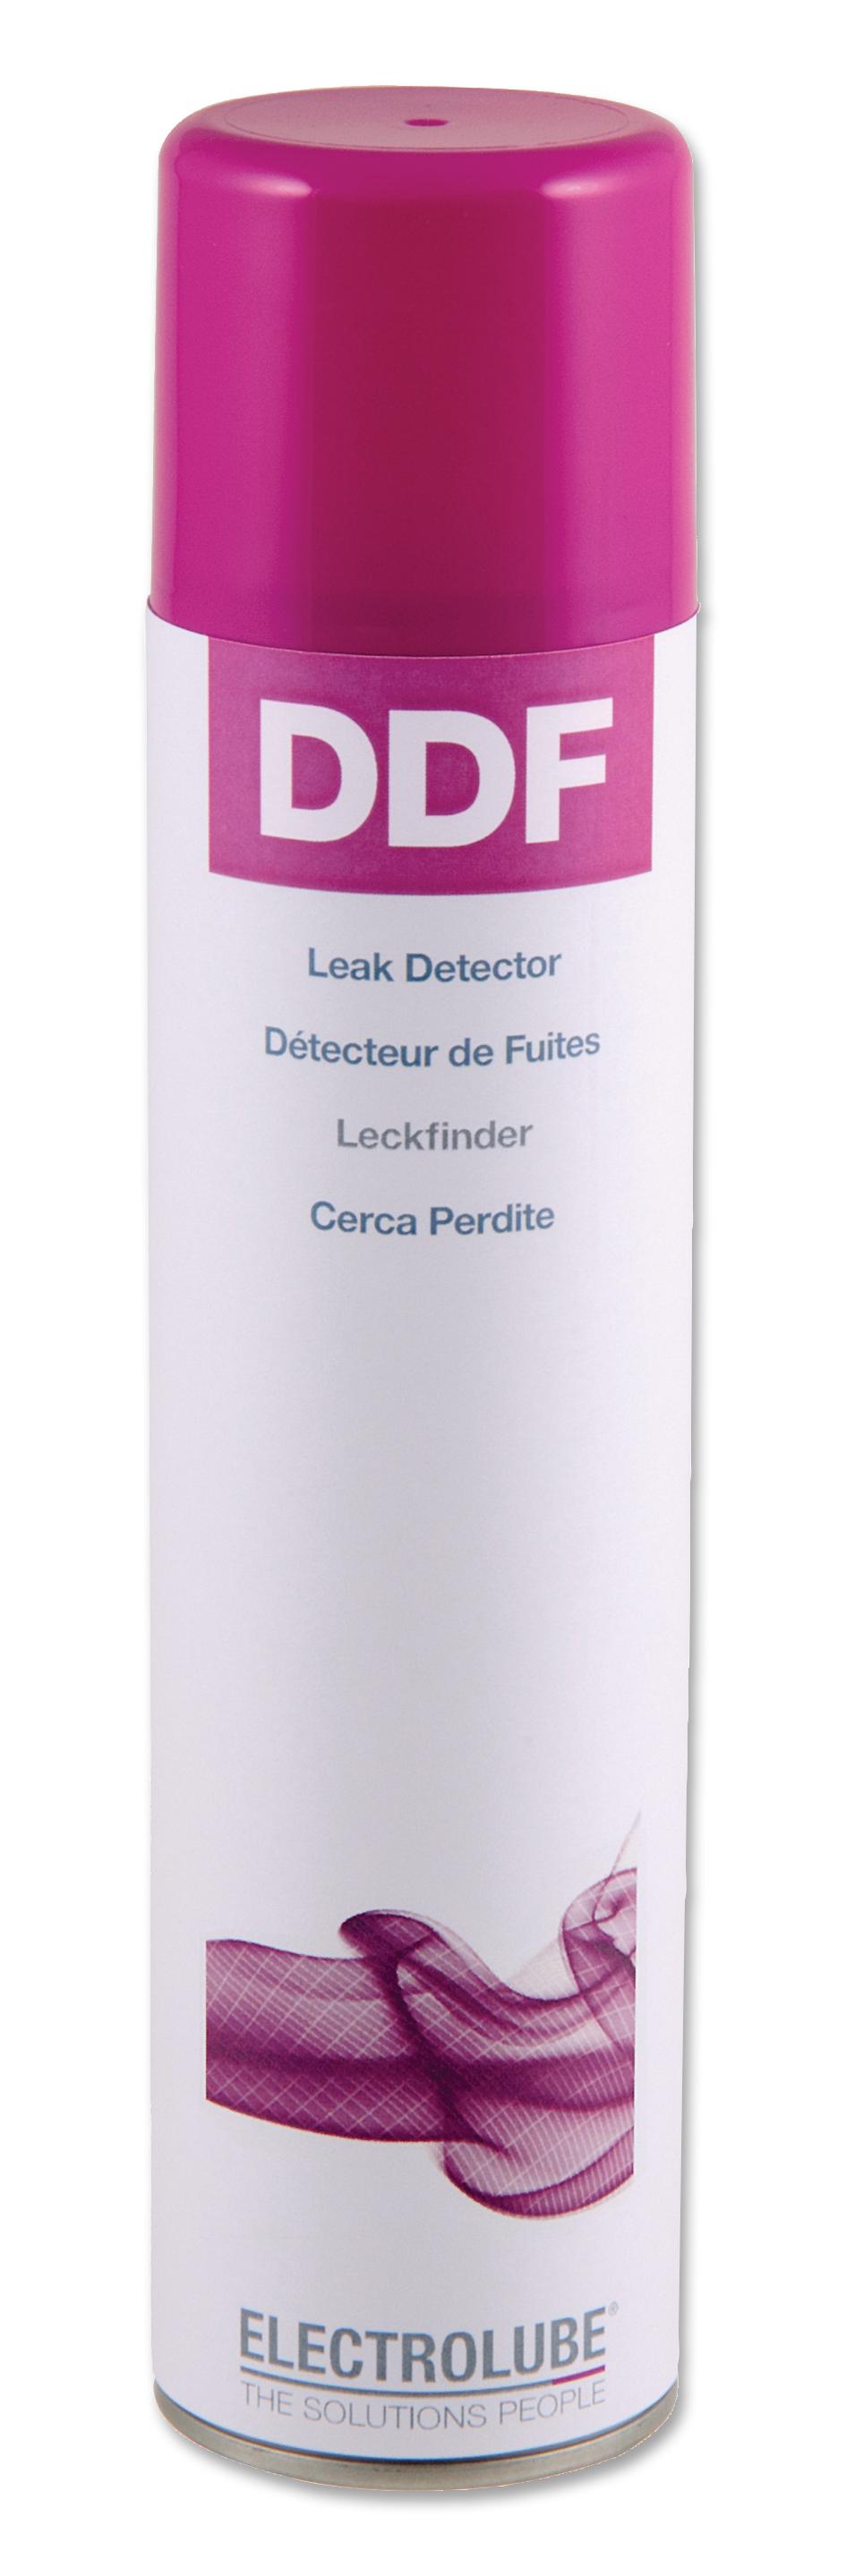 Electrolube Ddf400 Ml Leak Detector, Ddf, 400Ml